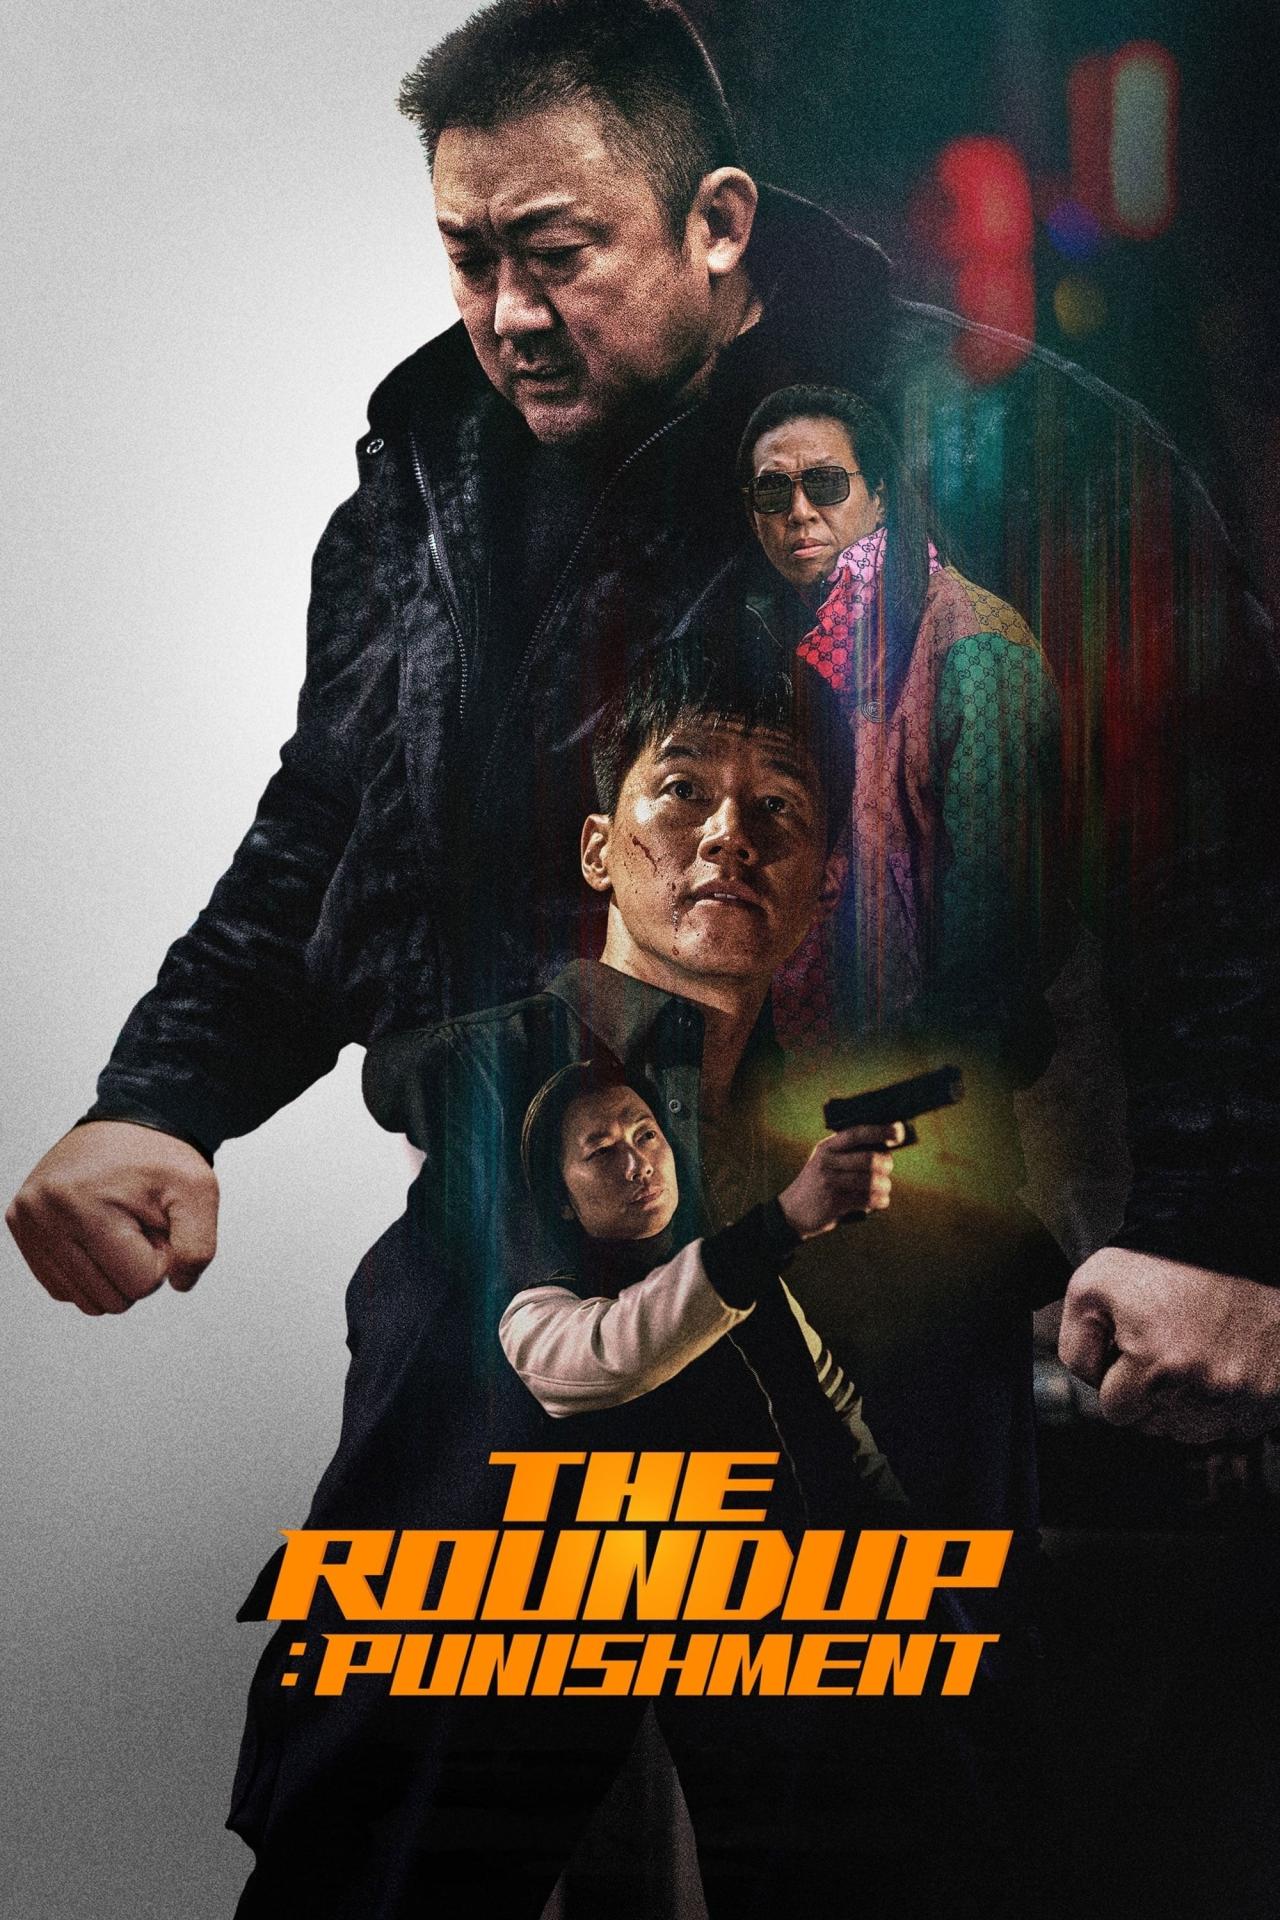 The Roundup: Punishment est-il disponible sur Netflix ou autre ?